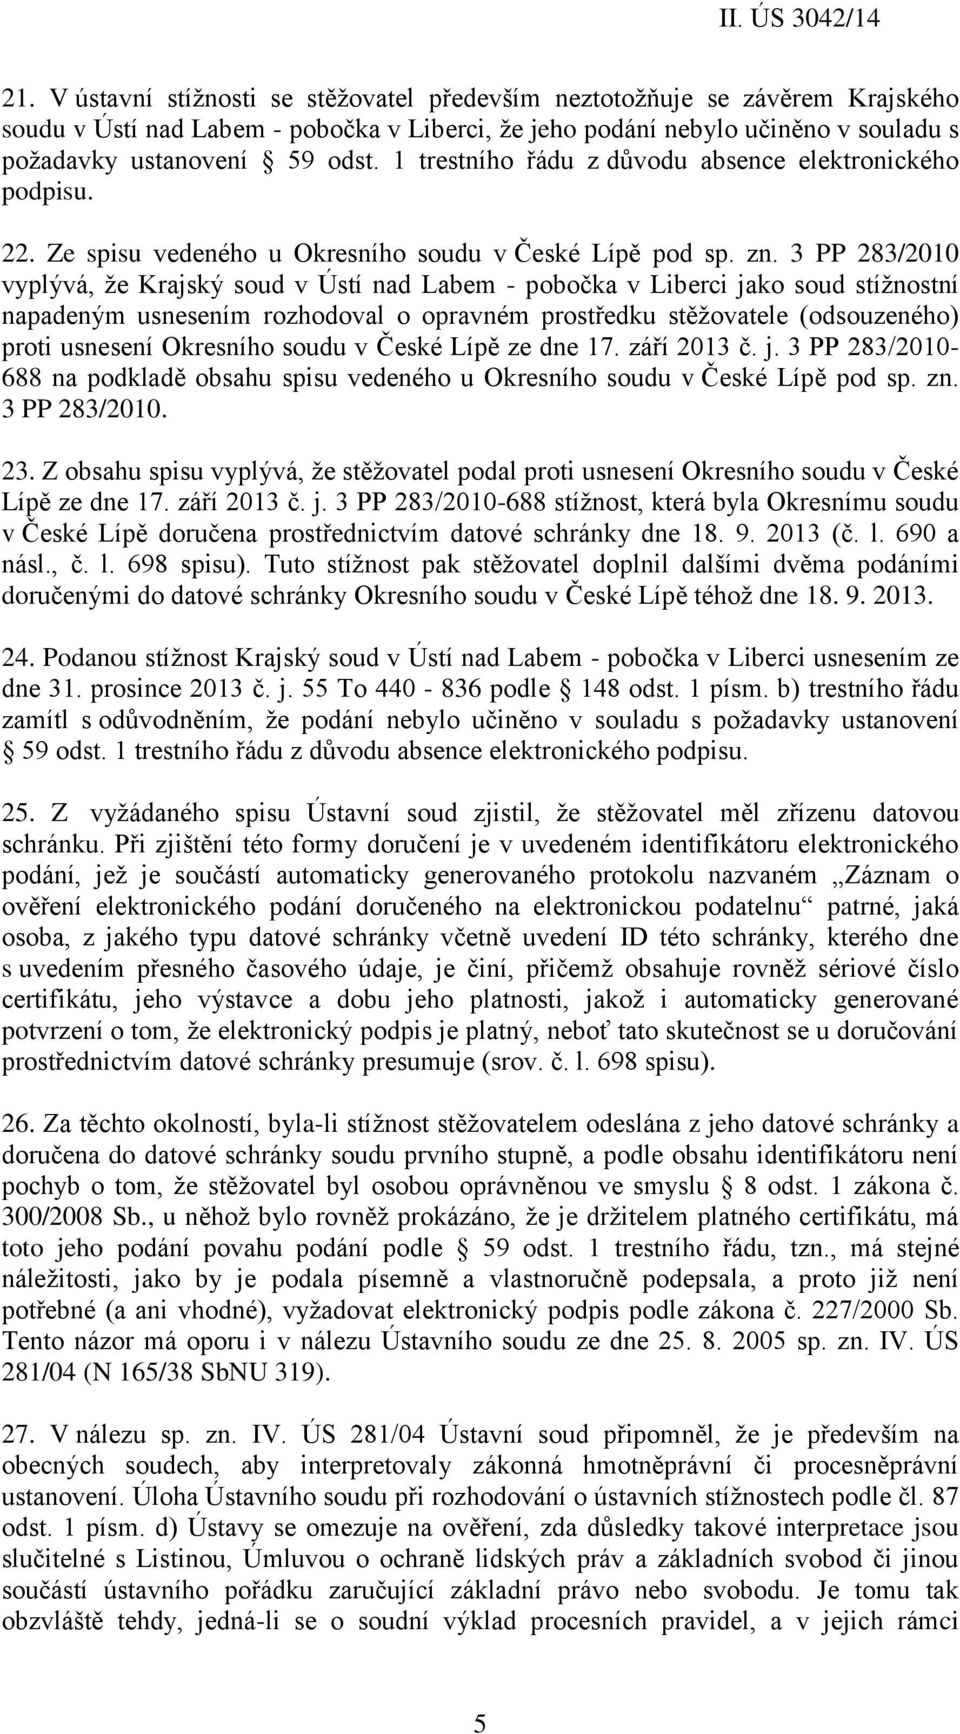 3 PP 283/2010 vyplývá, že Krajský soud v Ústí nad Labem - pobočka v Liberci jako soud stížnostní napadeným usnesením rozhodoval o opravném prostředku stěžovatele (odsouzeného) proti usnesení